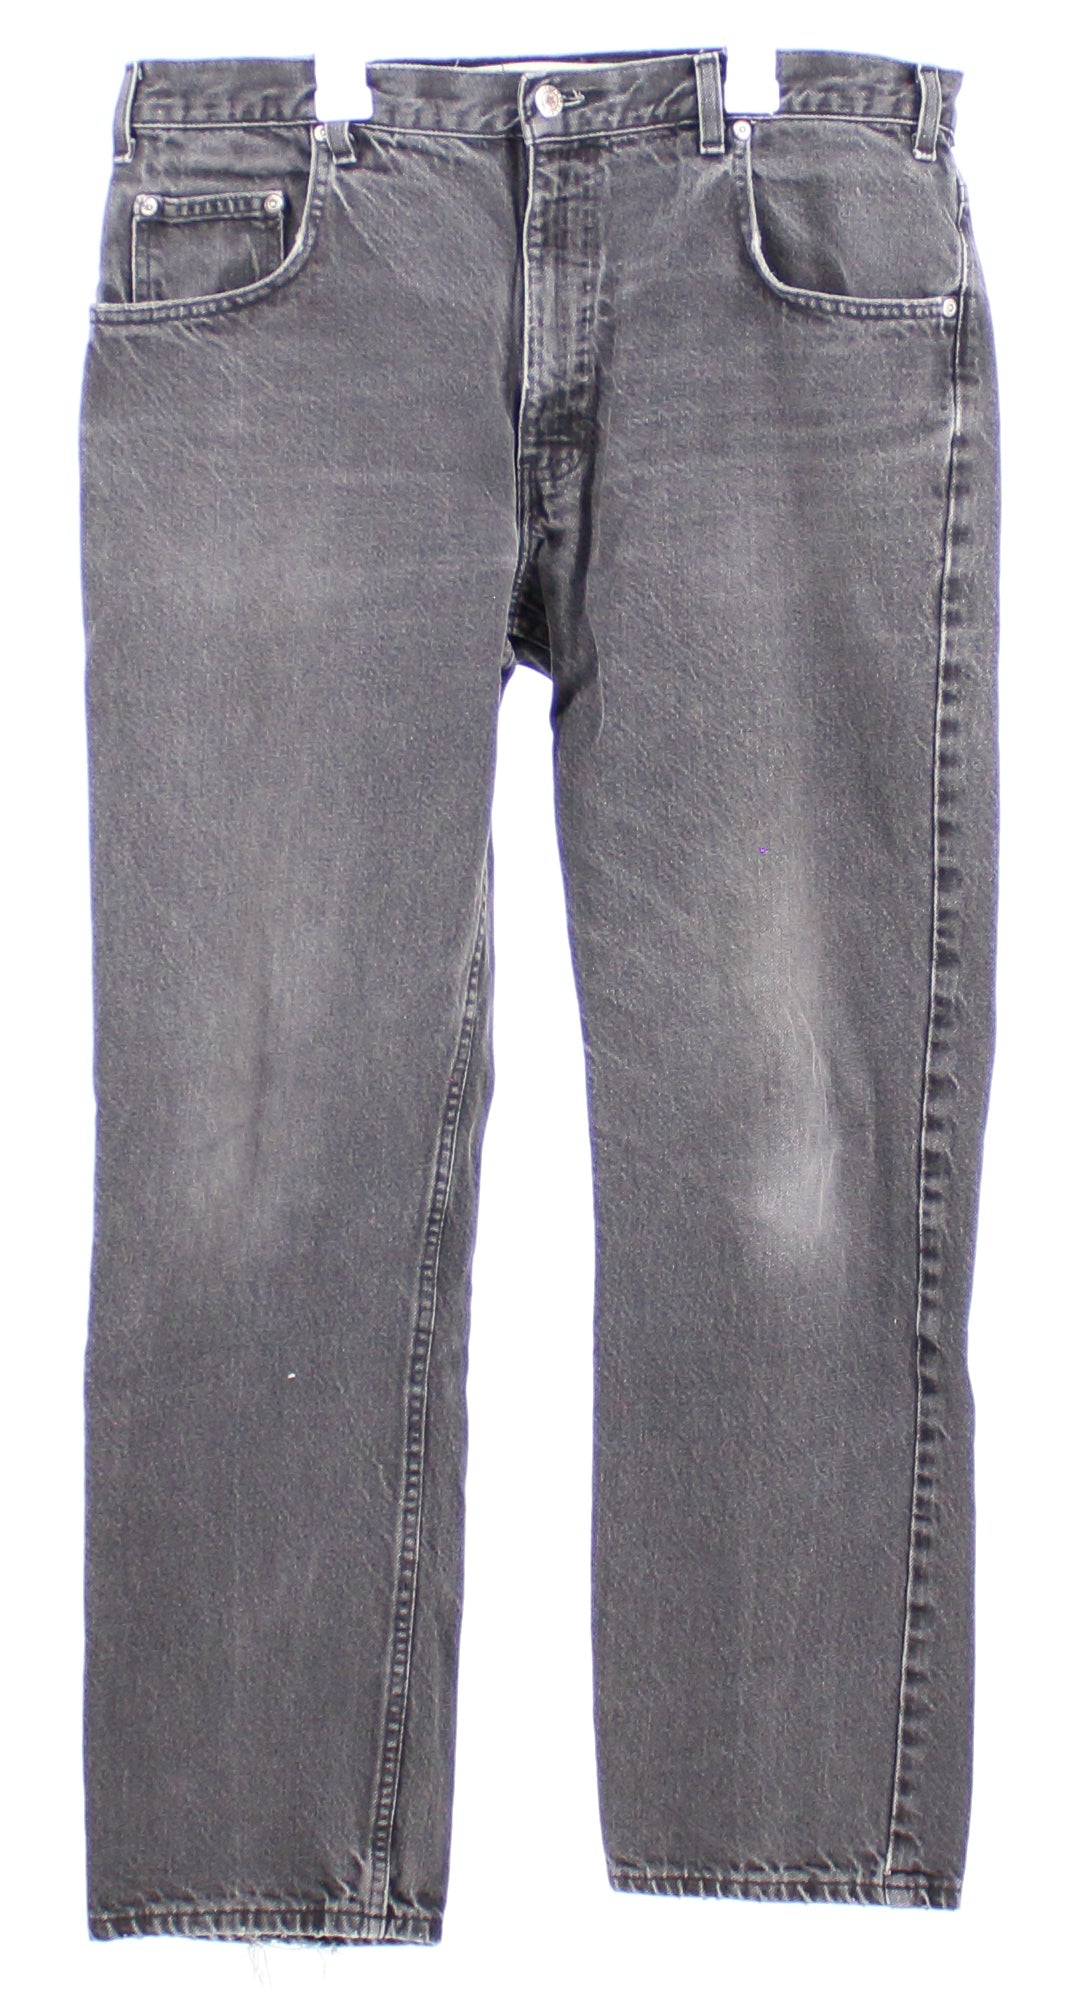 ORIGINALM Black Washed Denim Jeans